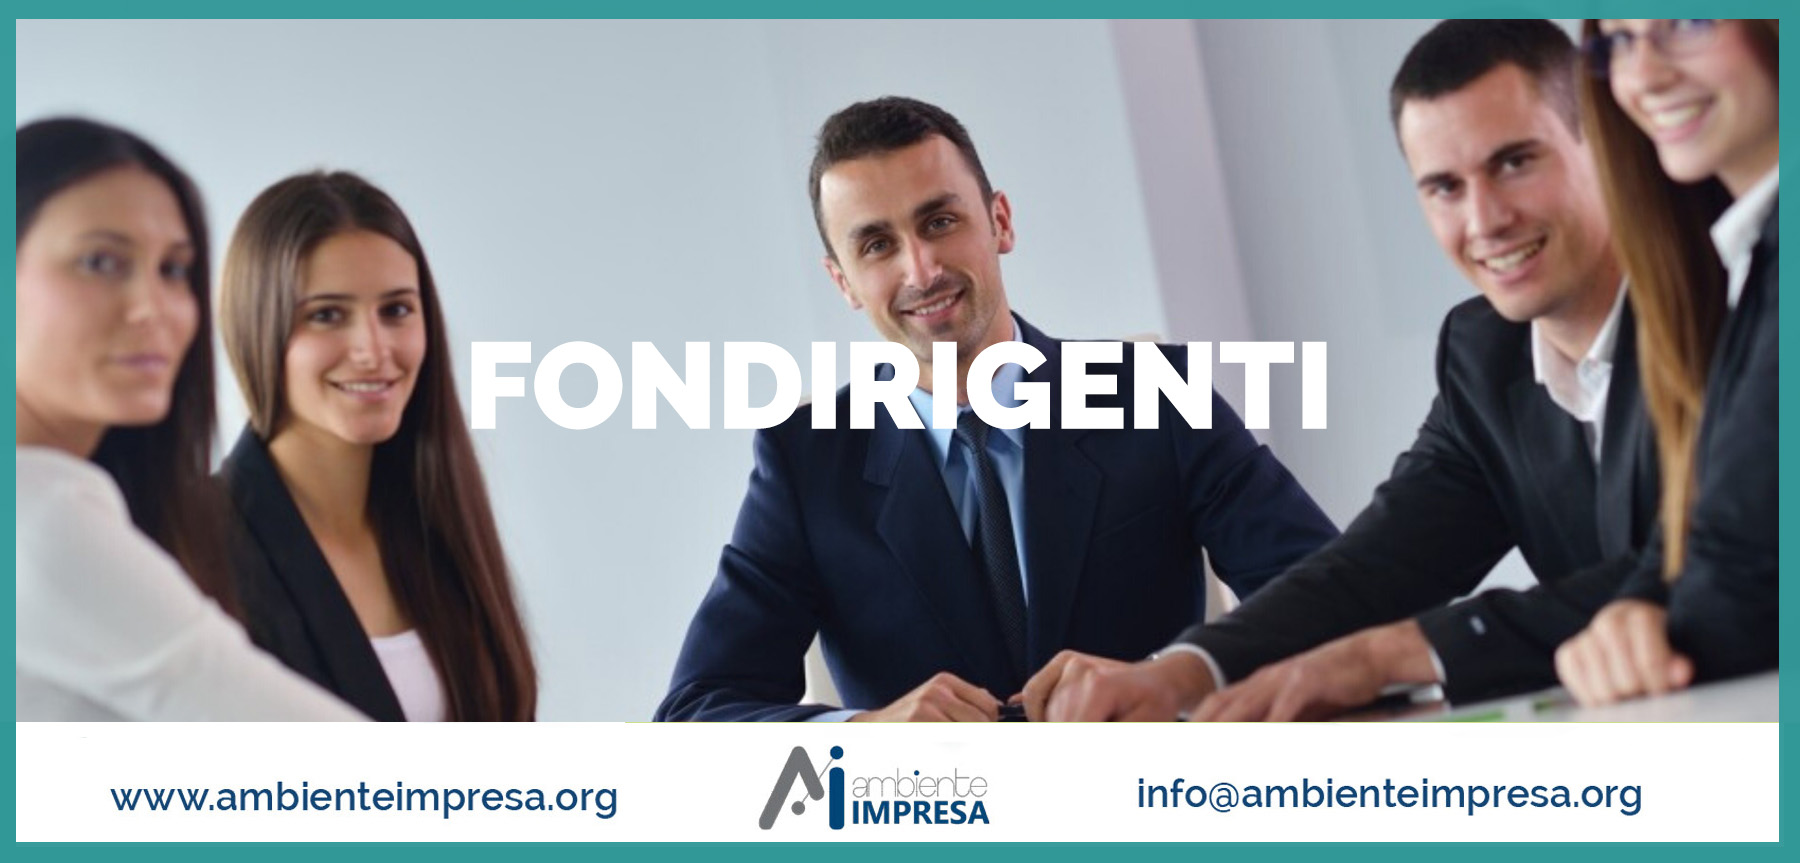 FONDIRIGENTI - FORMAZIONE FINANZIATA - Ambiente Impresa Cagliari